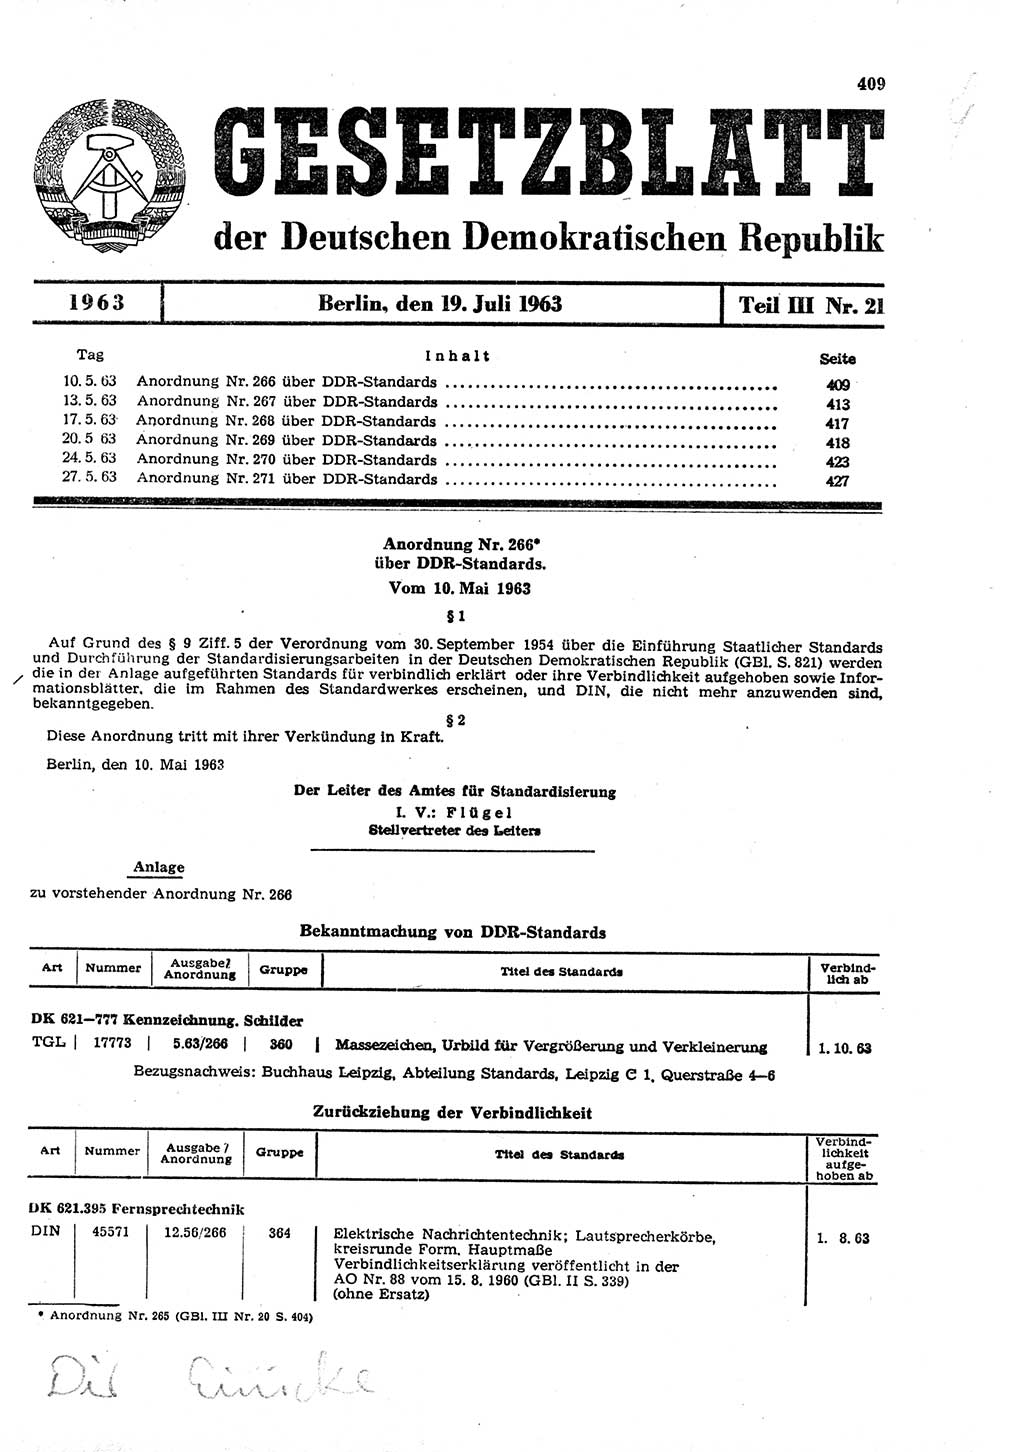 Gesetzblatt (GBl.) der Deutschen Demokratischen Republik (DDR) Teil ⅠⅠⅠ 1963, Seite 409 (GBl. DDR ⅠⅠⅠ 1963, S. 409)